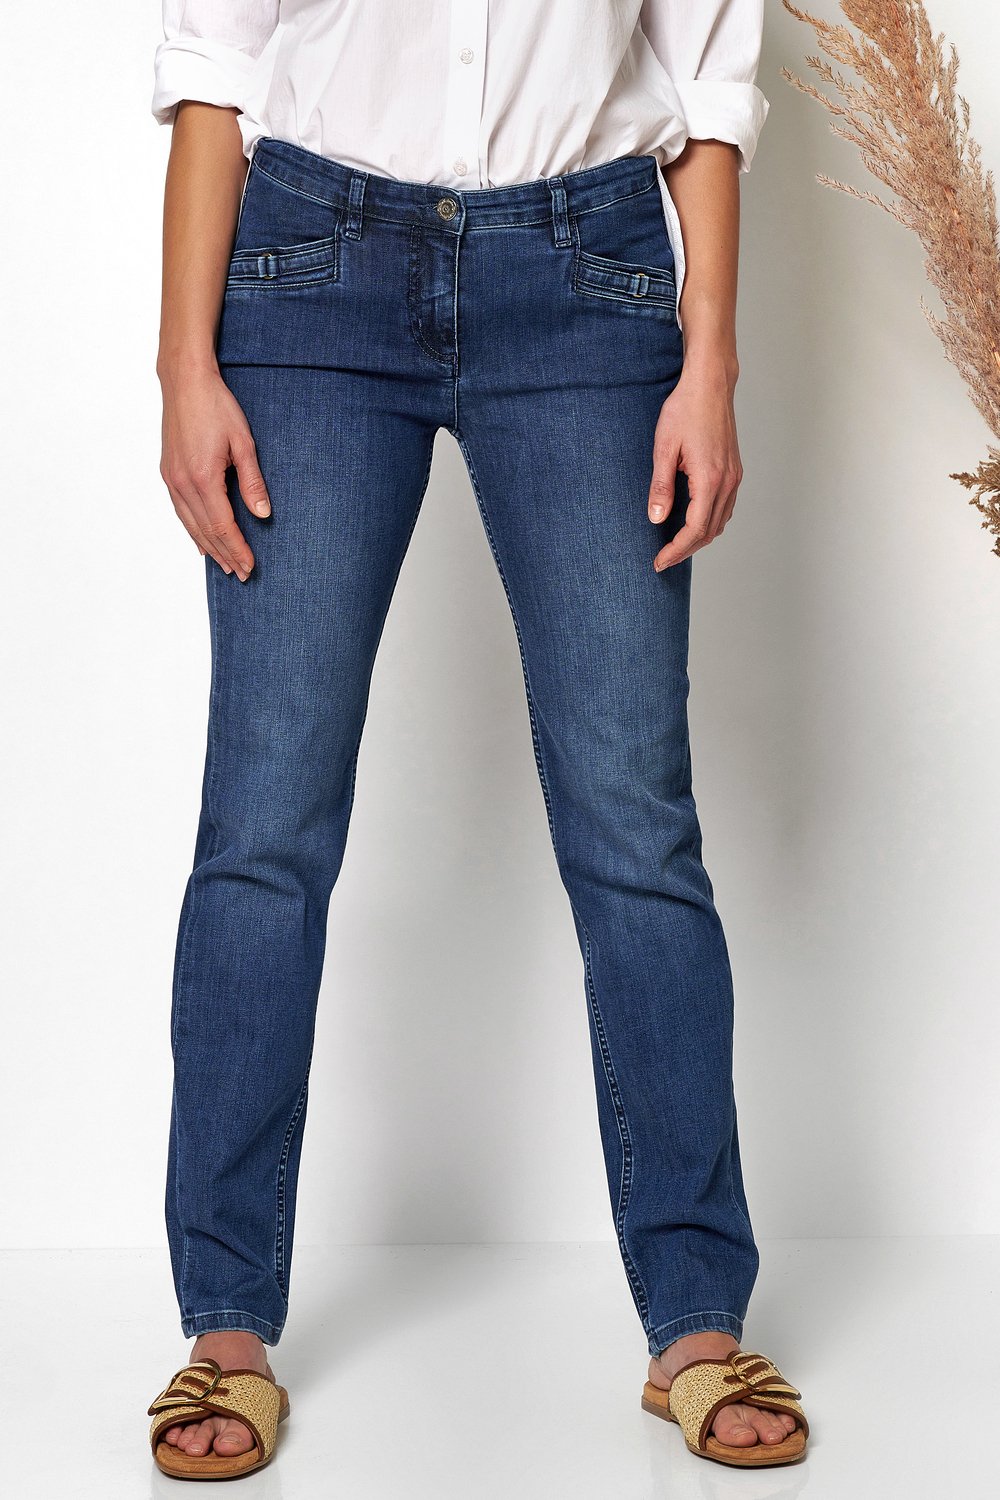 Damen-Jeans "Perfect Shape Straight" mit geradem Beinabschluß